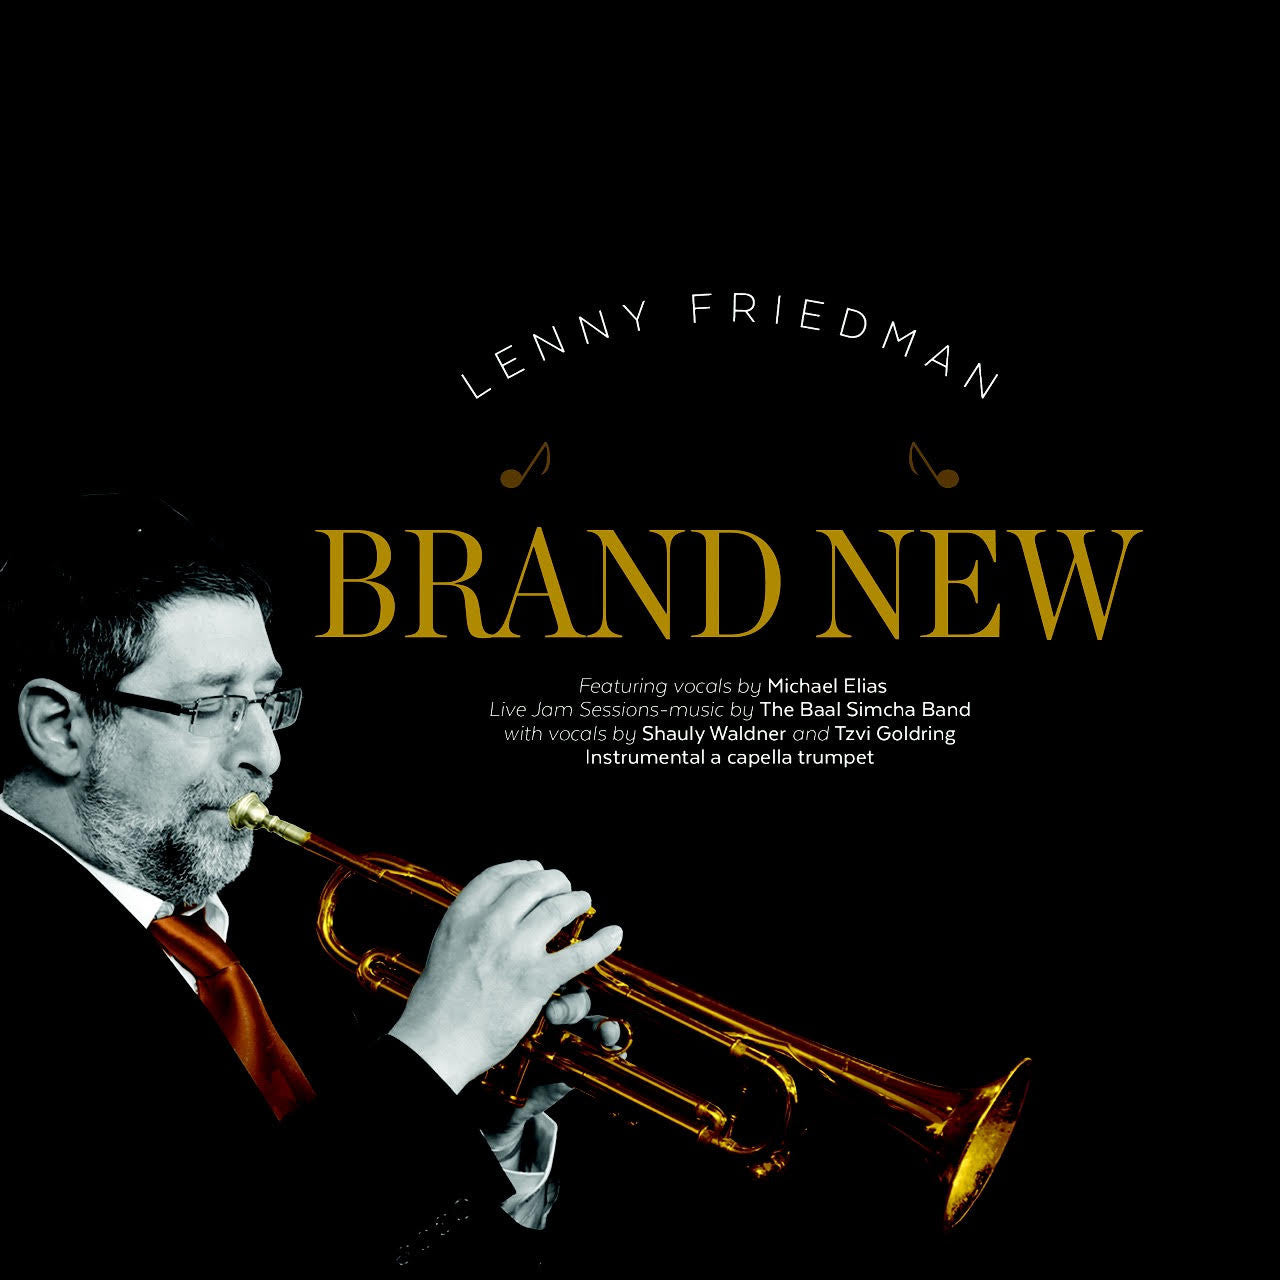 Lenny Friedman - Brand New